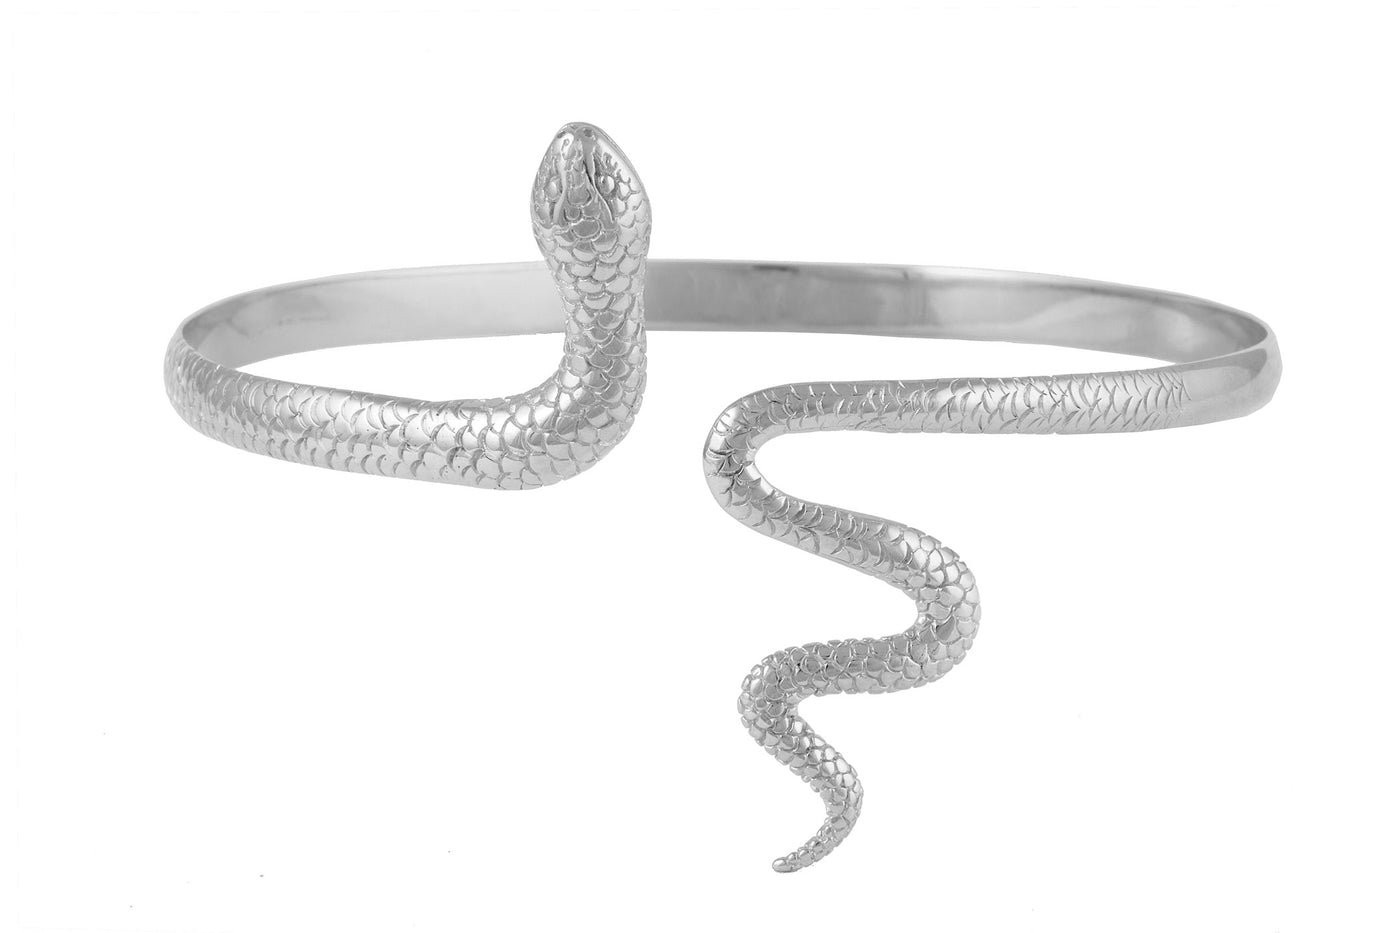 Snake shoulded bracelet. Silver